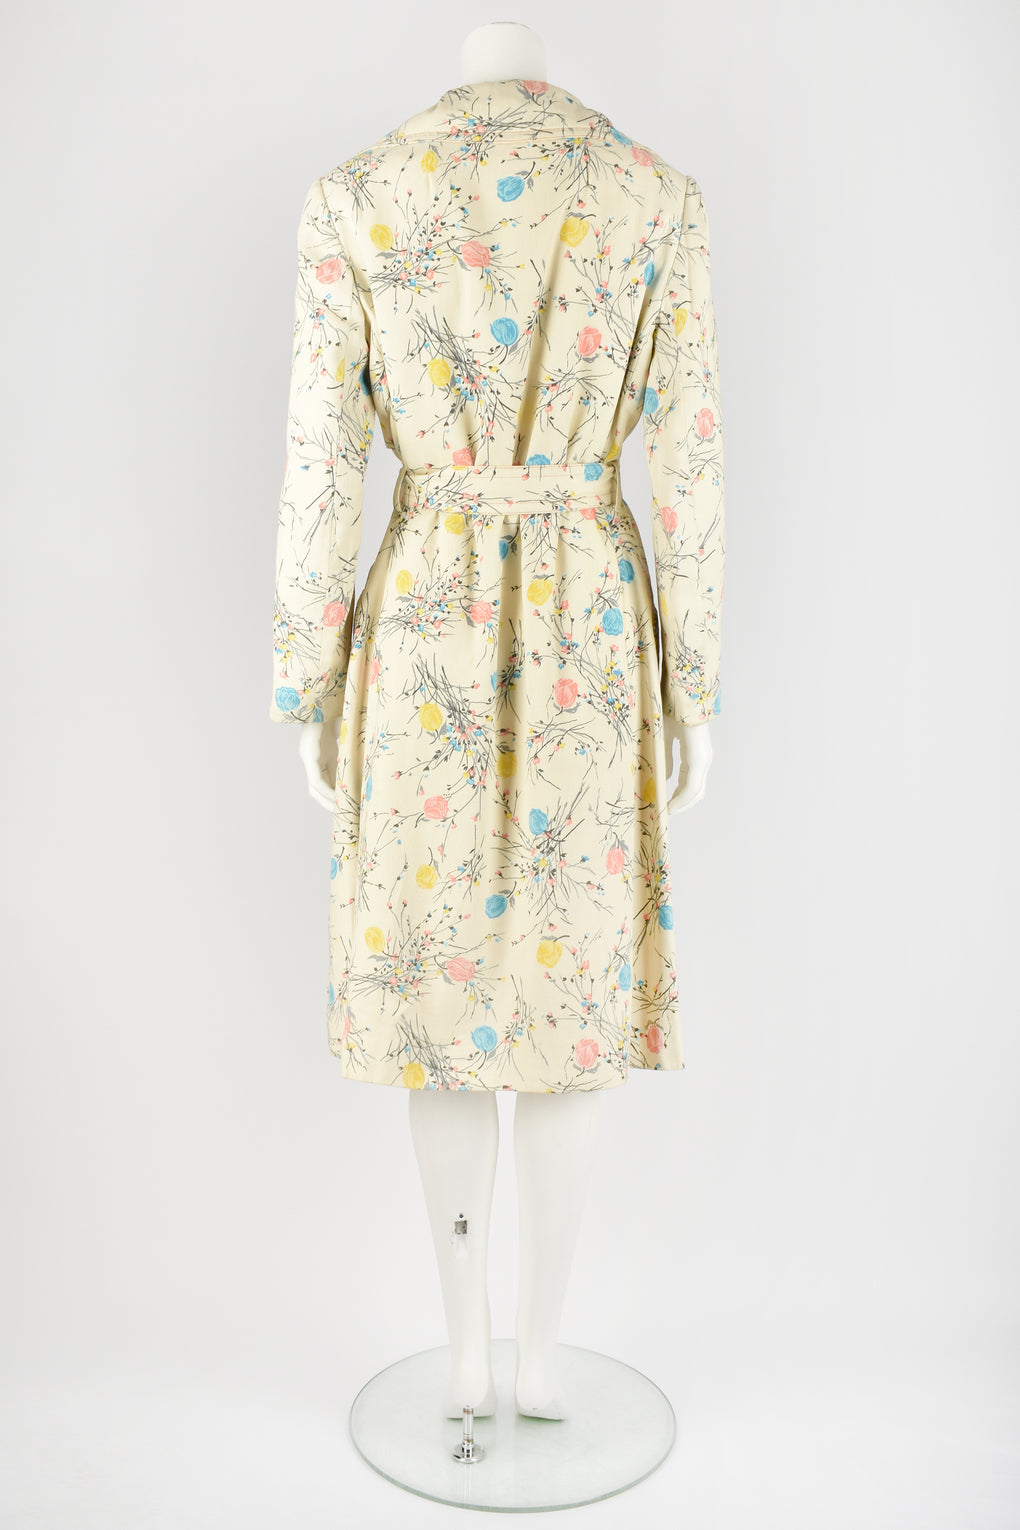 DONALD BROOKS 60s floral raincoat L